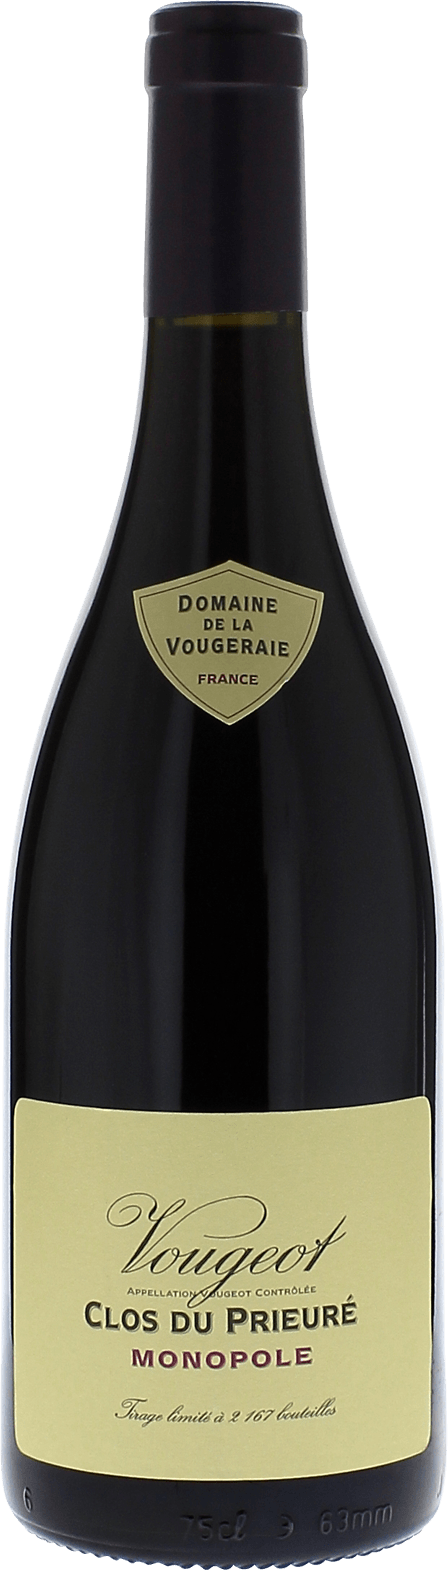 Vougeot clos du prieur 2015 Domaine VOUGERAIE, Bourgogne rouge